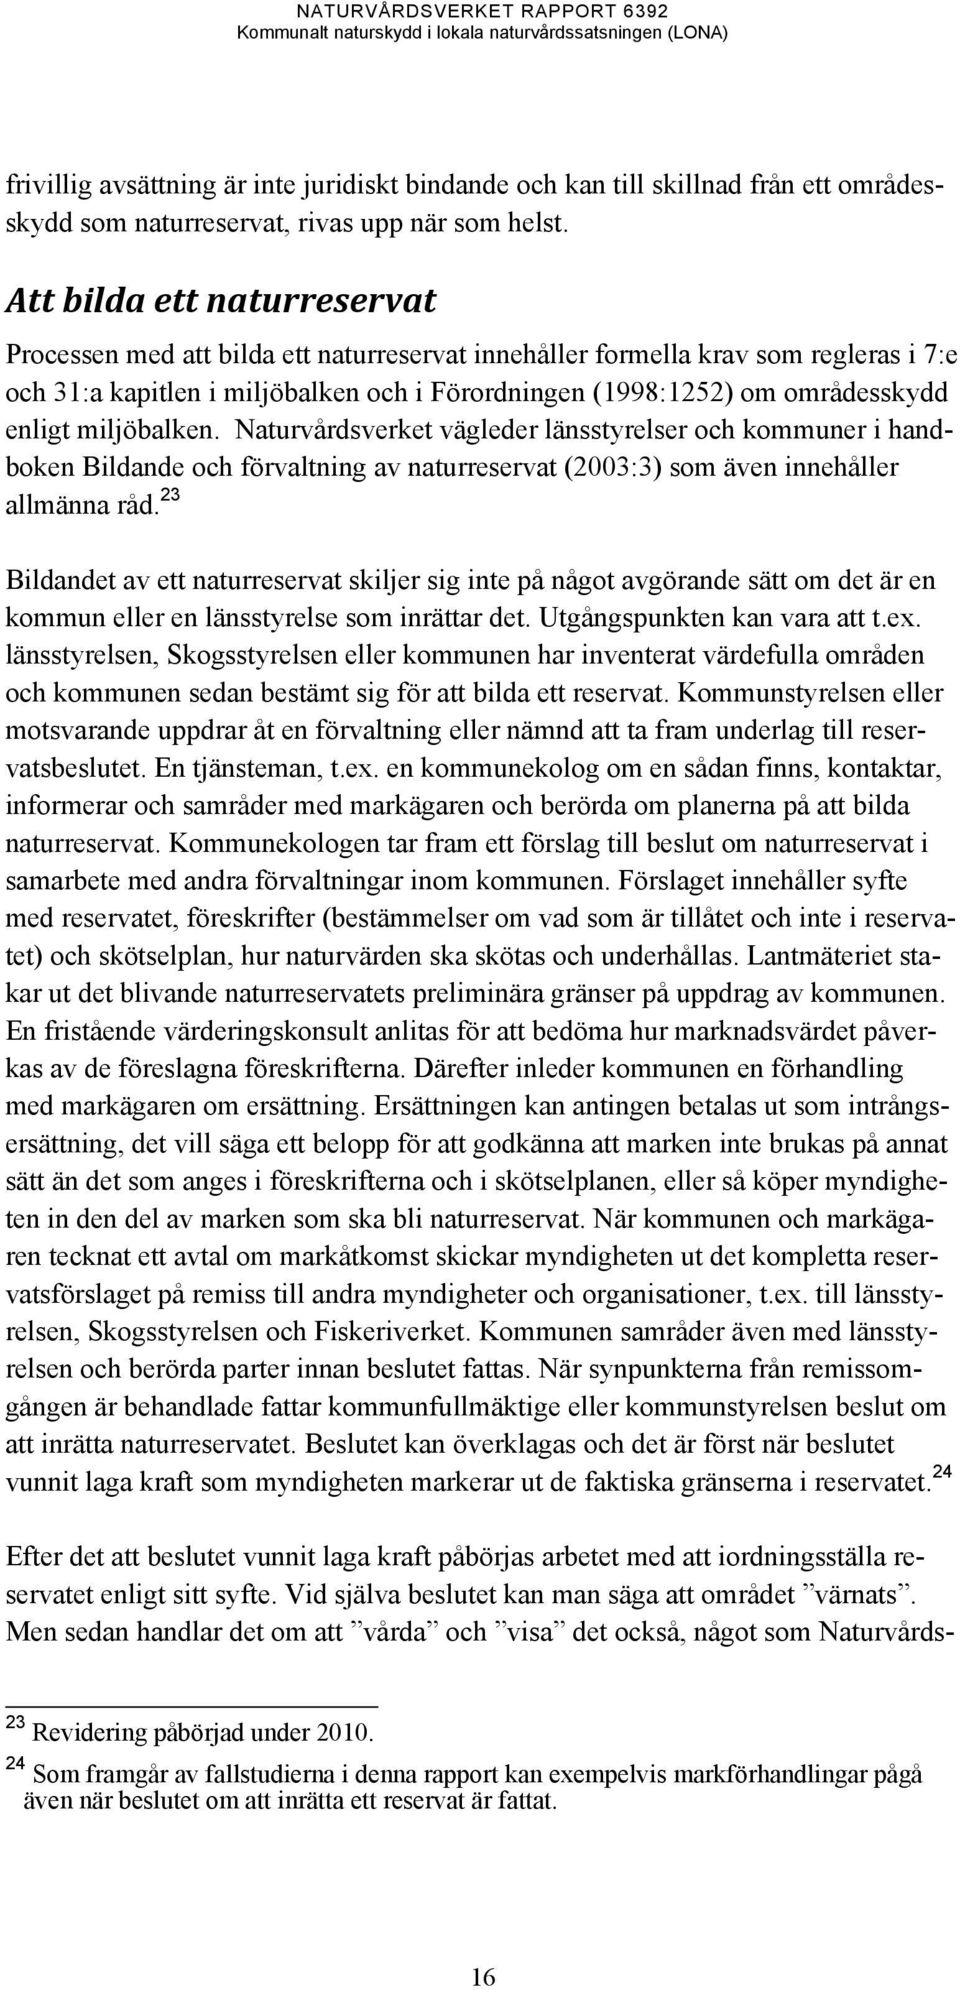 miljöbalken. Naturvårdsverket vägleder länsstyrelser och kommuner i handboken Bildande och förvaltning av naturreservat (2003:3) som även innehåller allmänna råd.